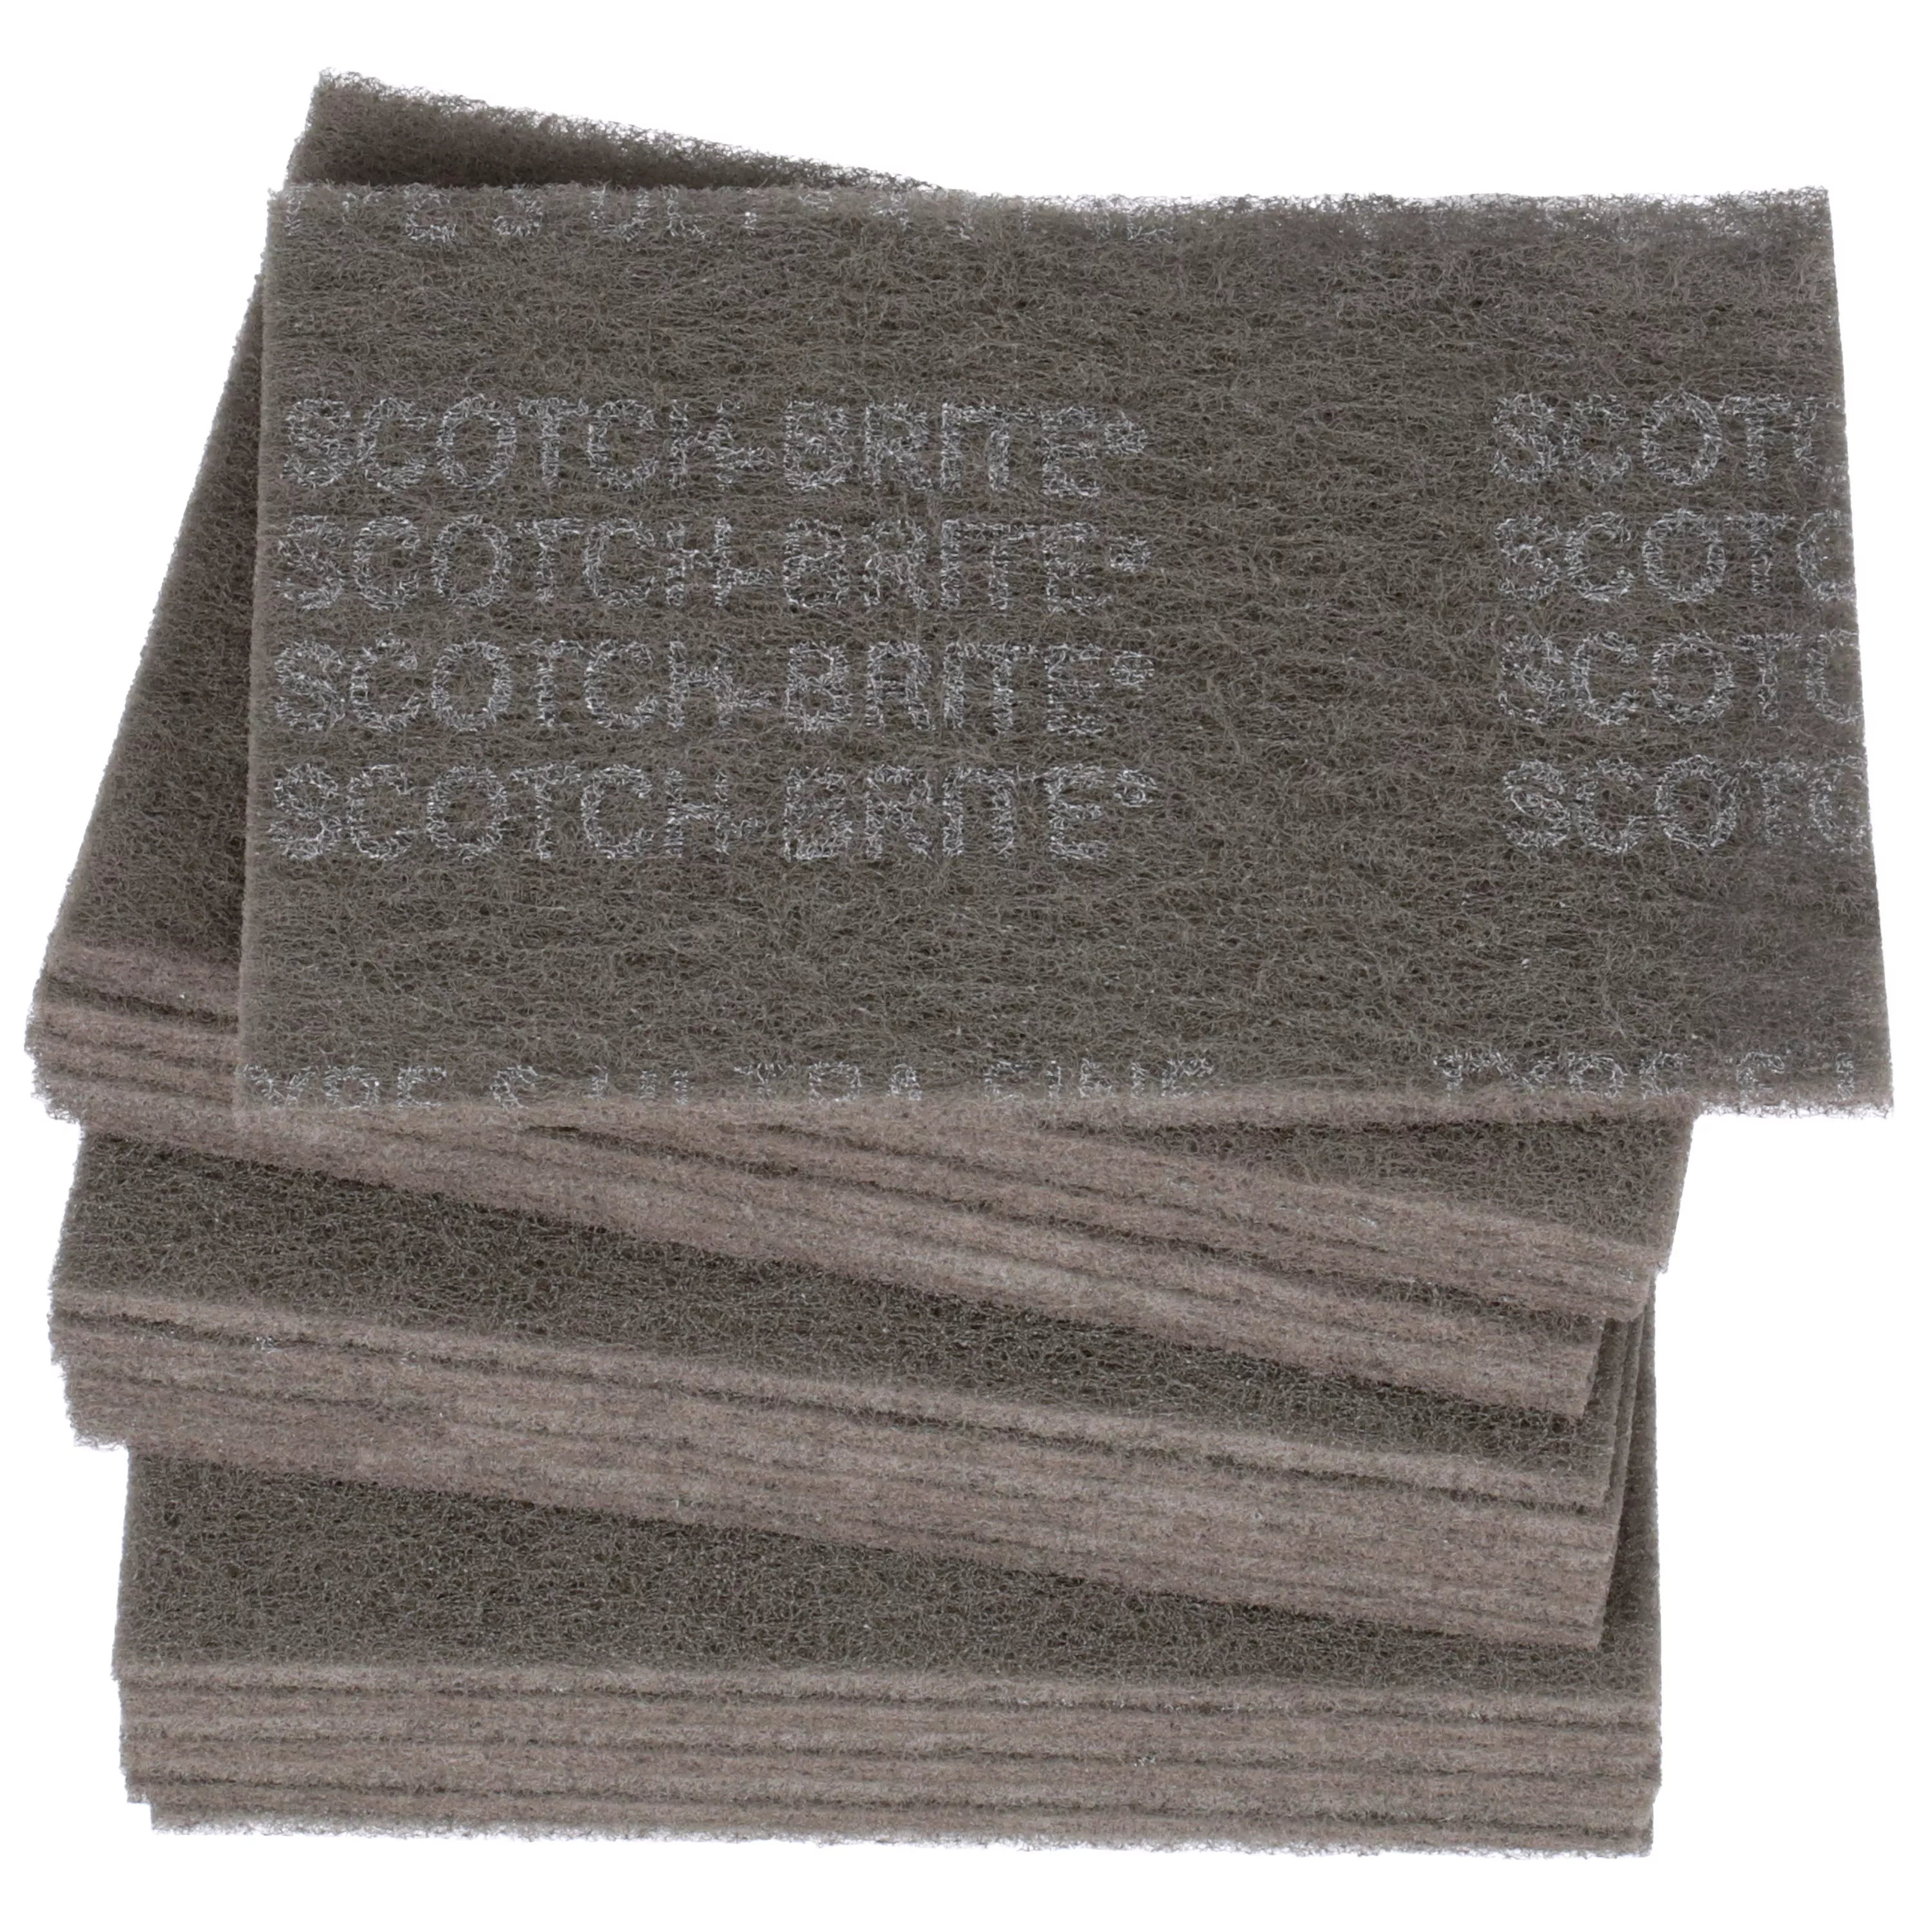 Scotch-Brite™ Hand Pad 7448, HP-HP, SiC Ultra Fine, Gray, 6 in x 9 in,
20/Carton, 60 ea/Case